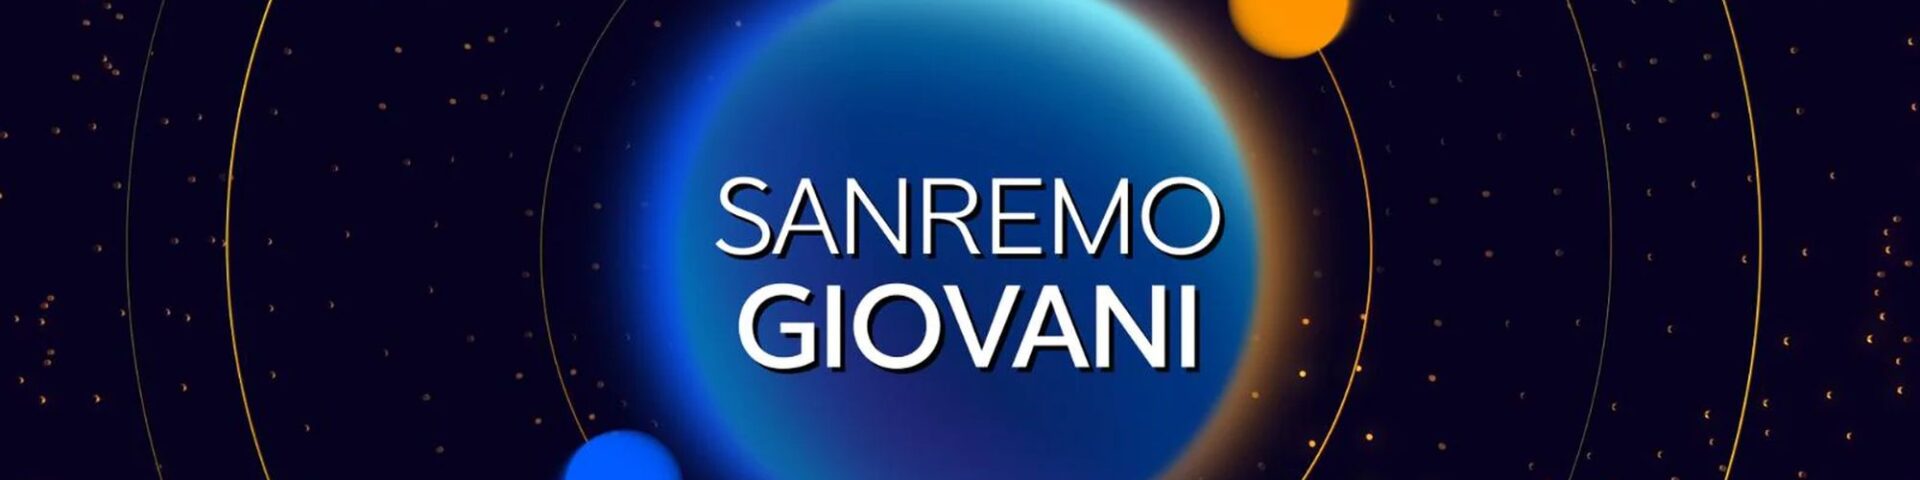 Verso Sanremo Giovani, il logo ufficiale